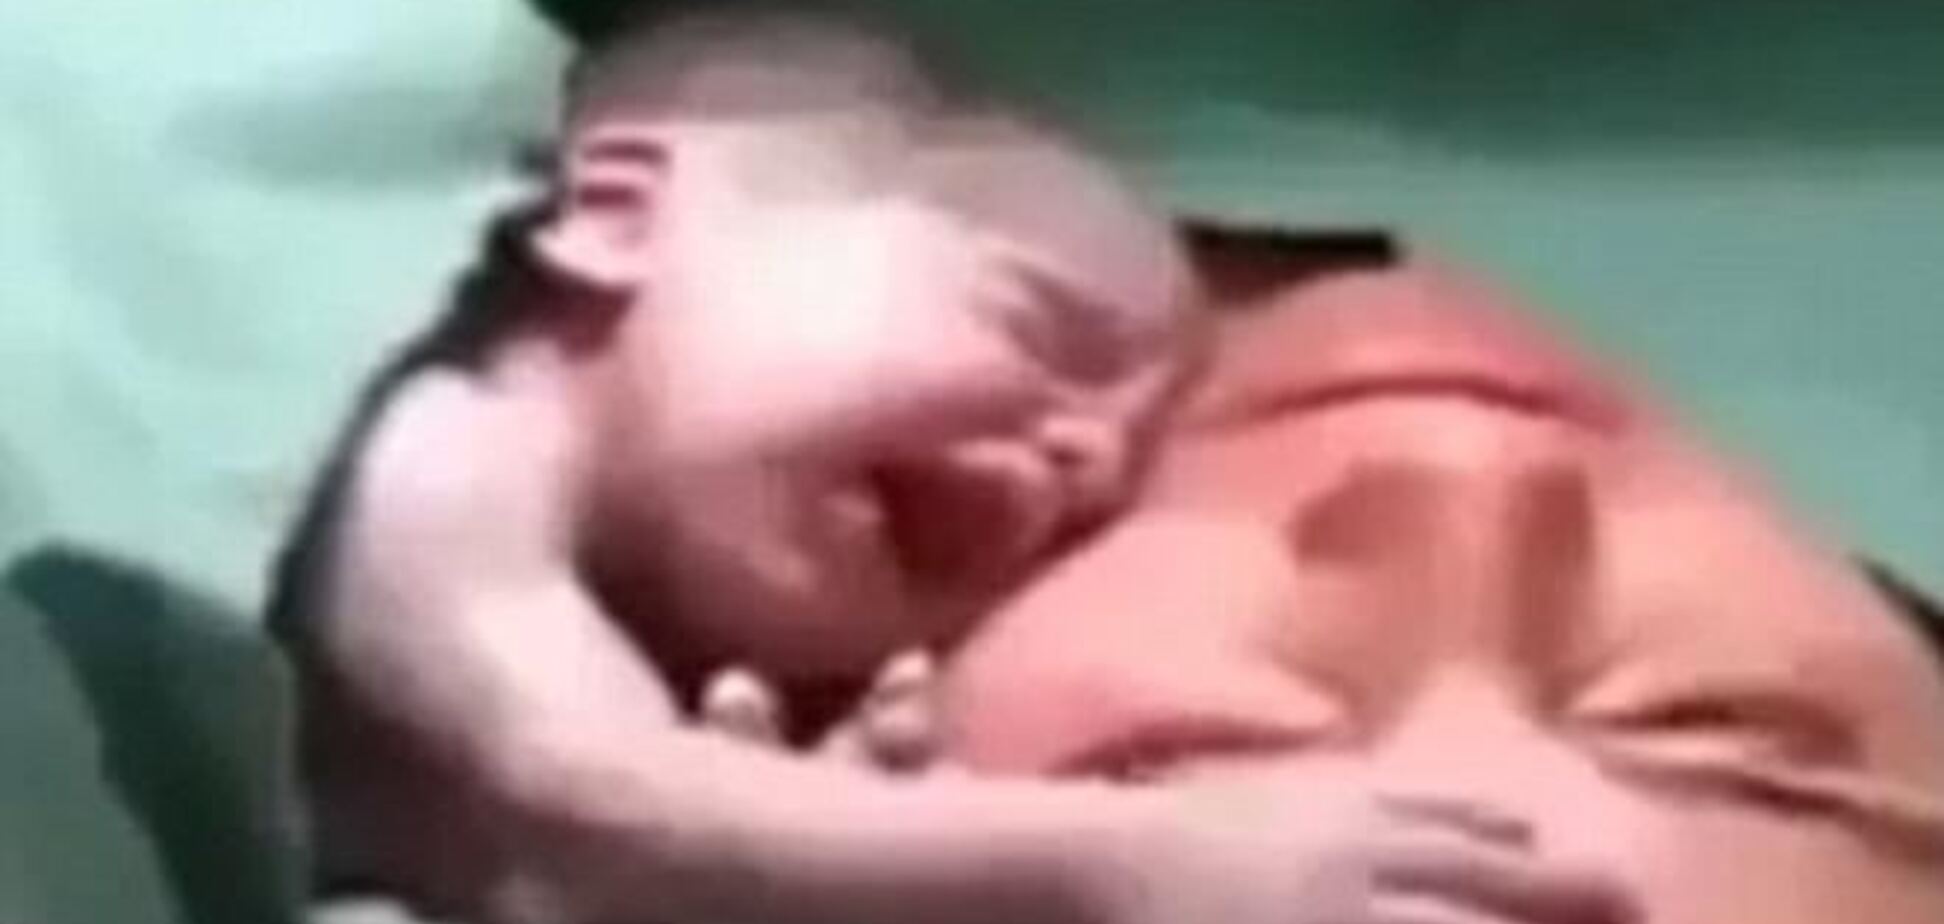 Интернет покорило видео, на котором новорожденный не дает себя забрать от матери